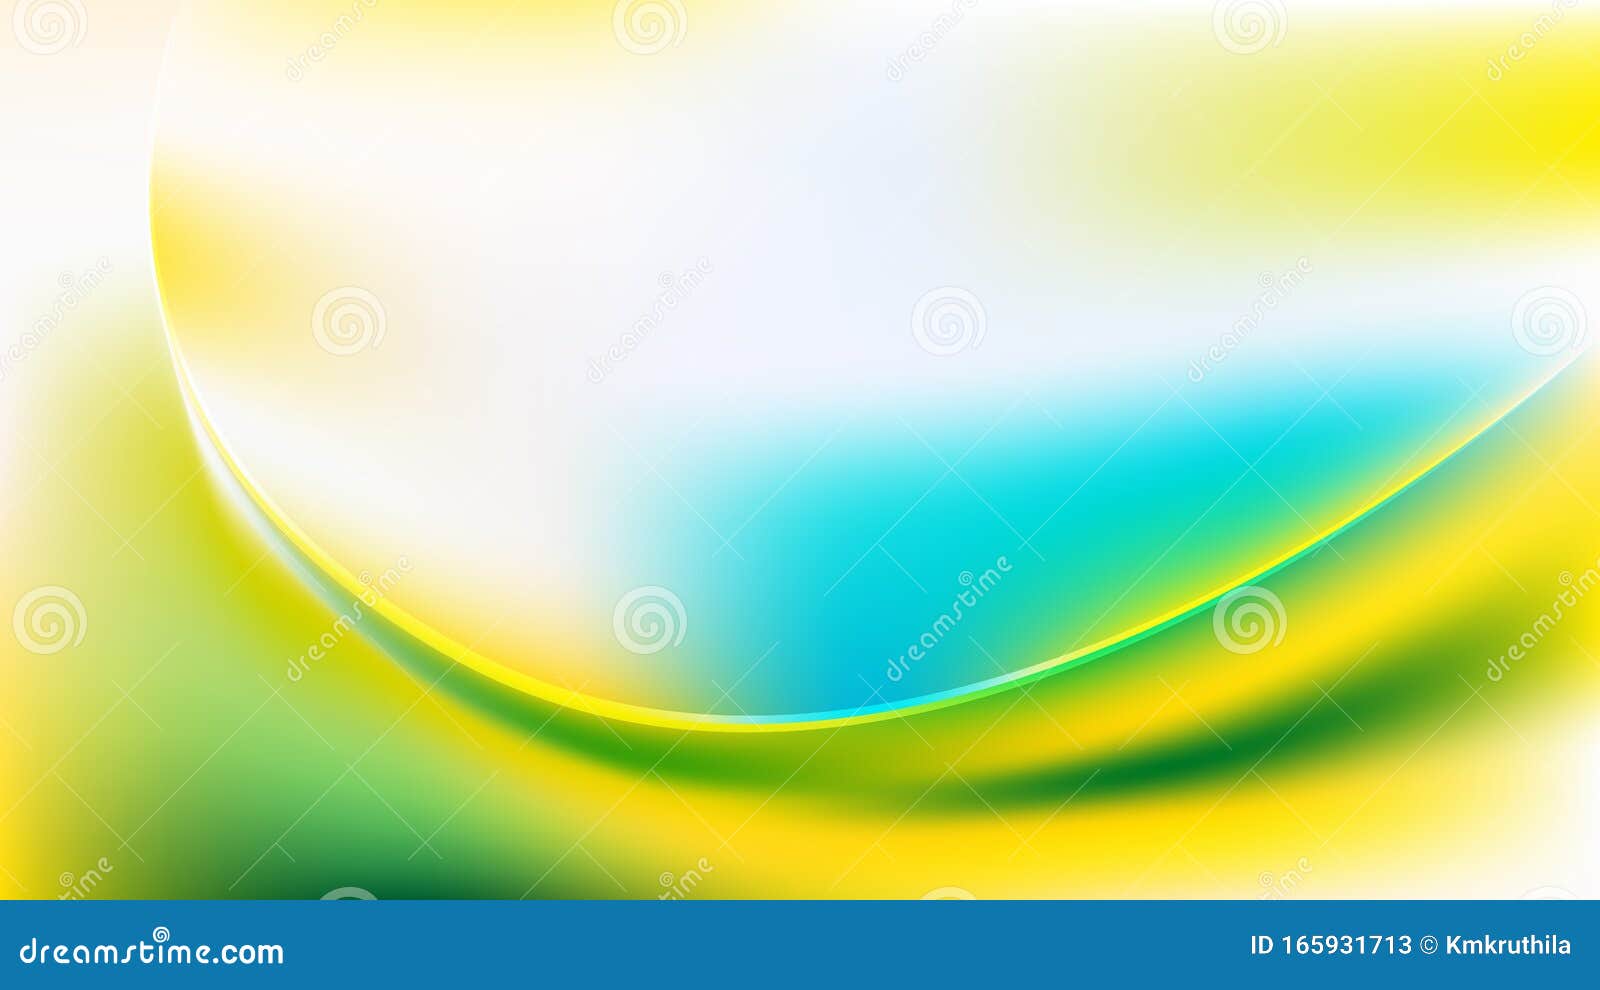 Hình ảnh Abstact Wave Background mang lại cho bạn cảm giác độc đáo như đang chìm đắm trong những làn sóng màu sắc và tinh tế. Xem hình ảnh liên quan để khám phá những mẫu nền đẹp, ấn tượng đã xuất hiện trong năm 2021.